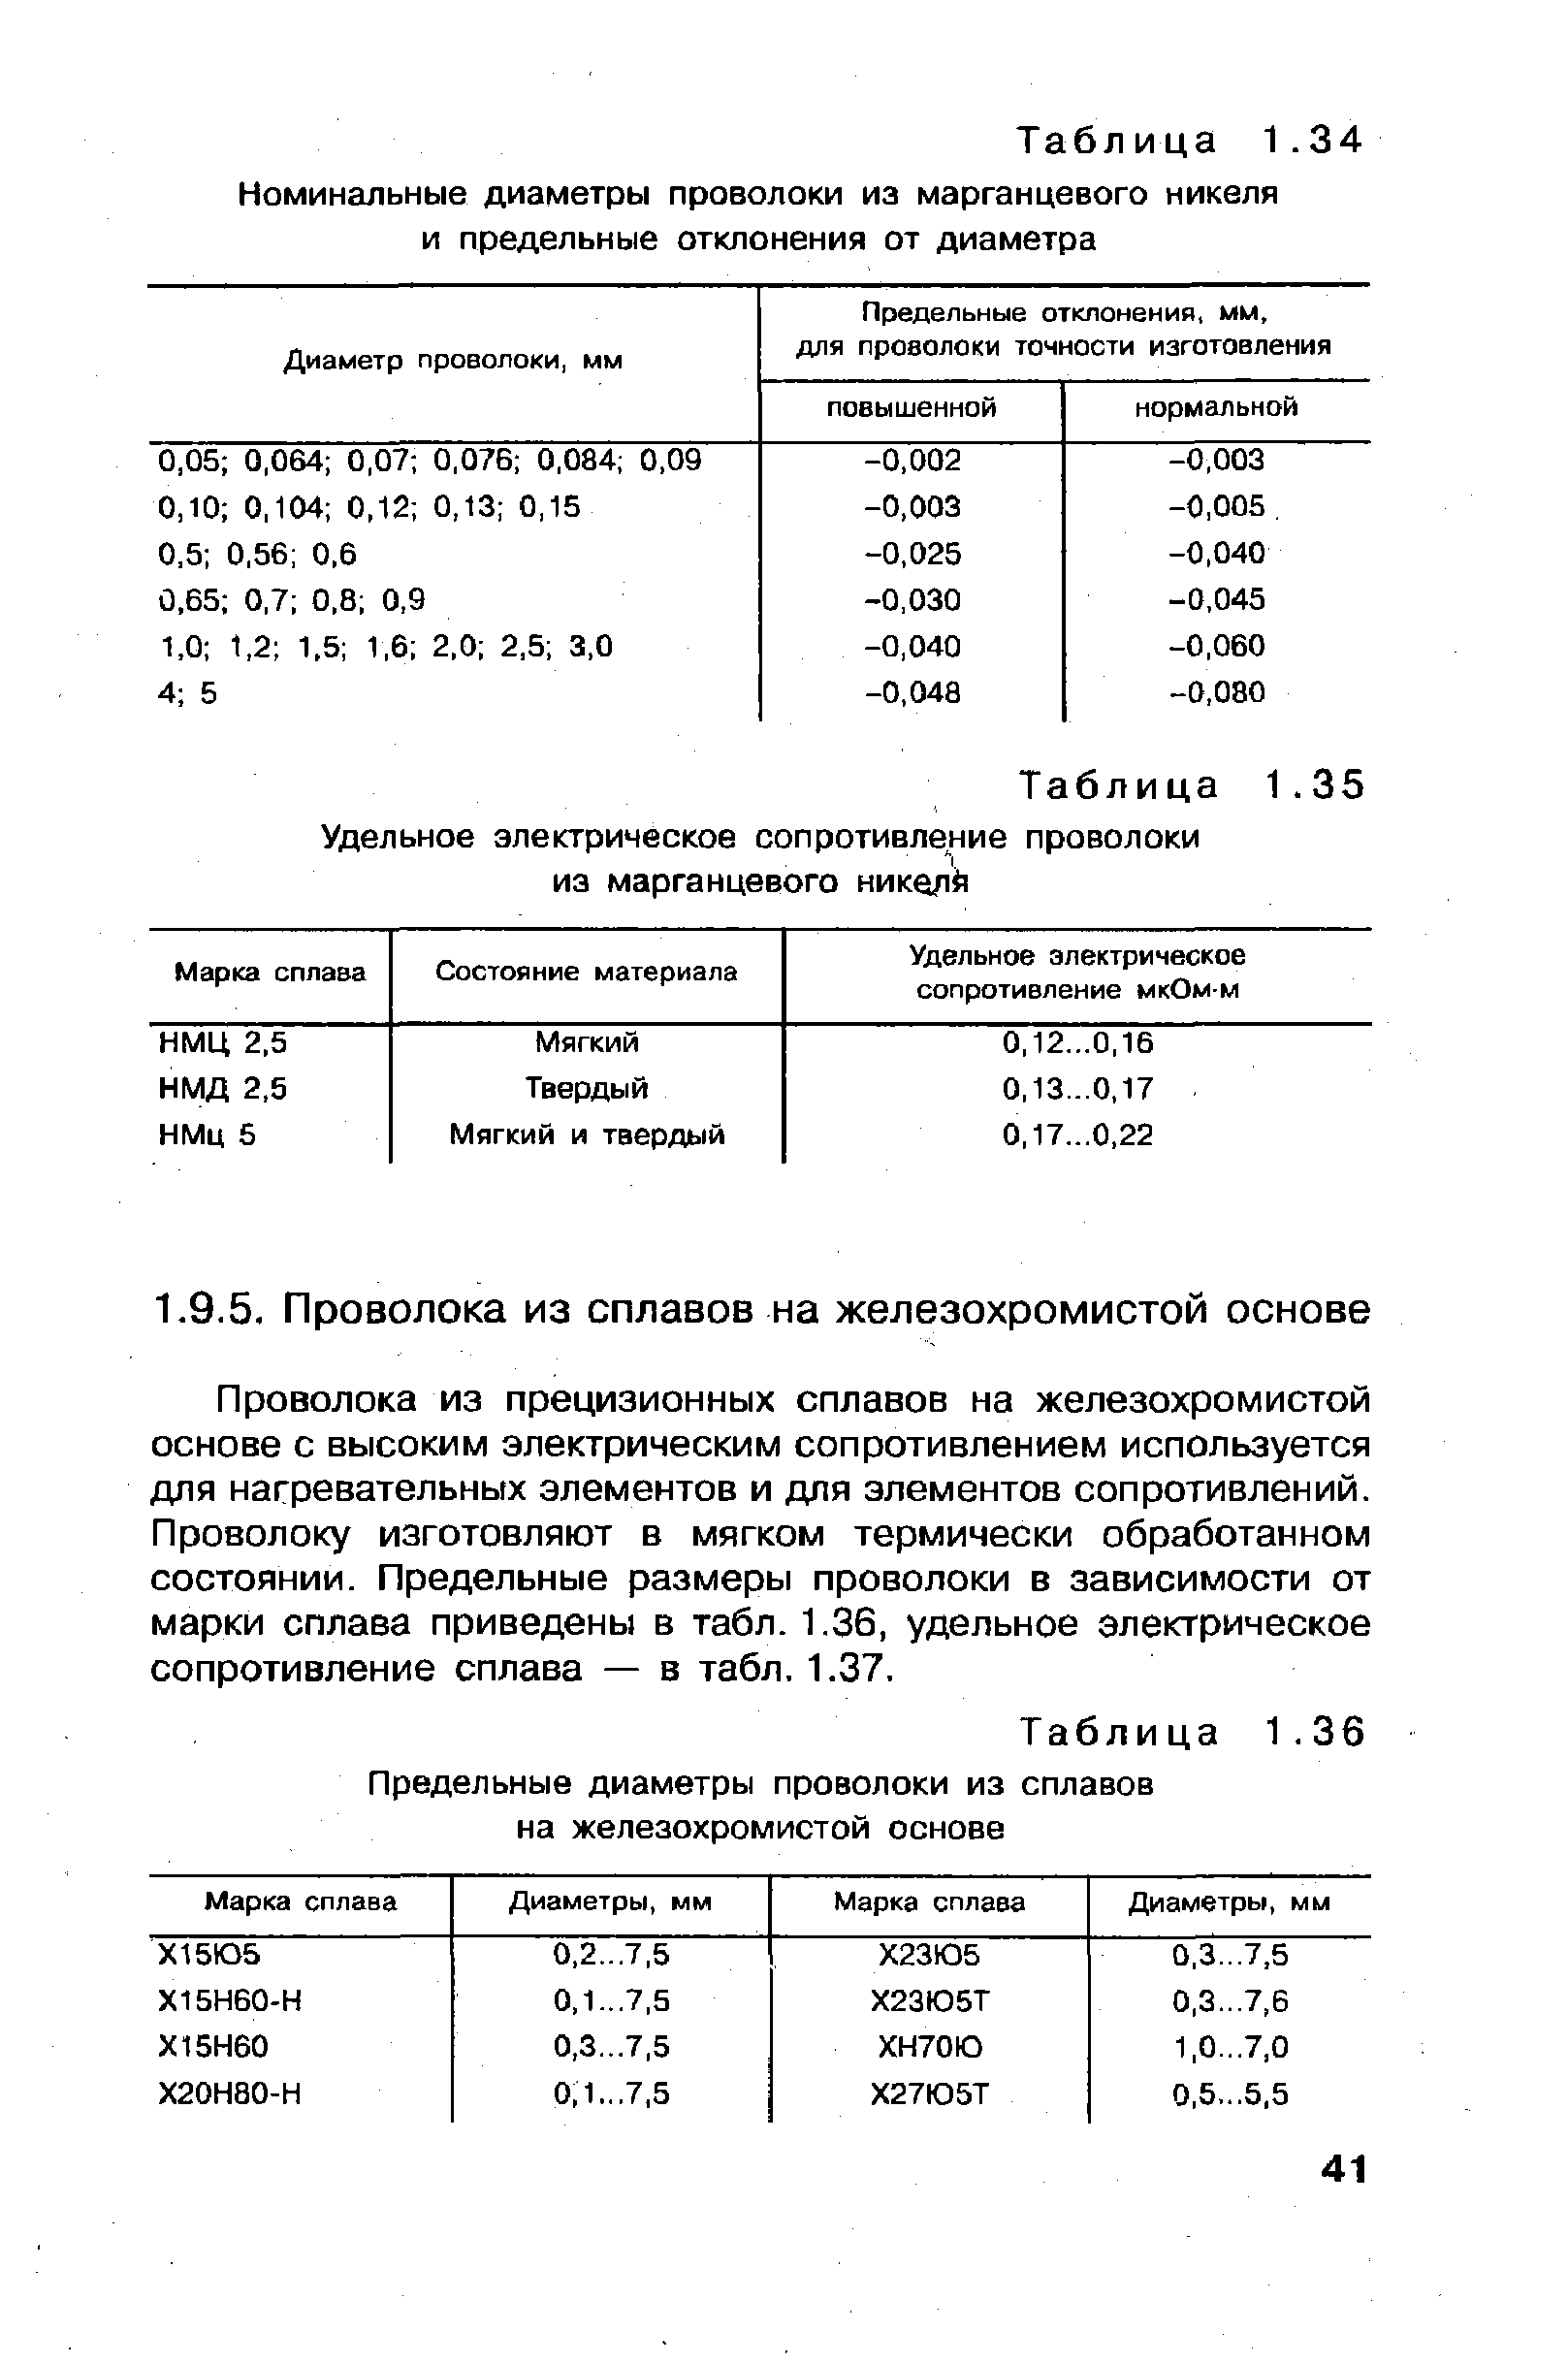 Таблица 1. 36 Предельные диаметры проволоки из сплавов на железохромистой основе
